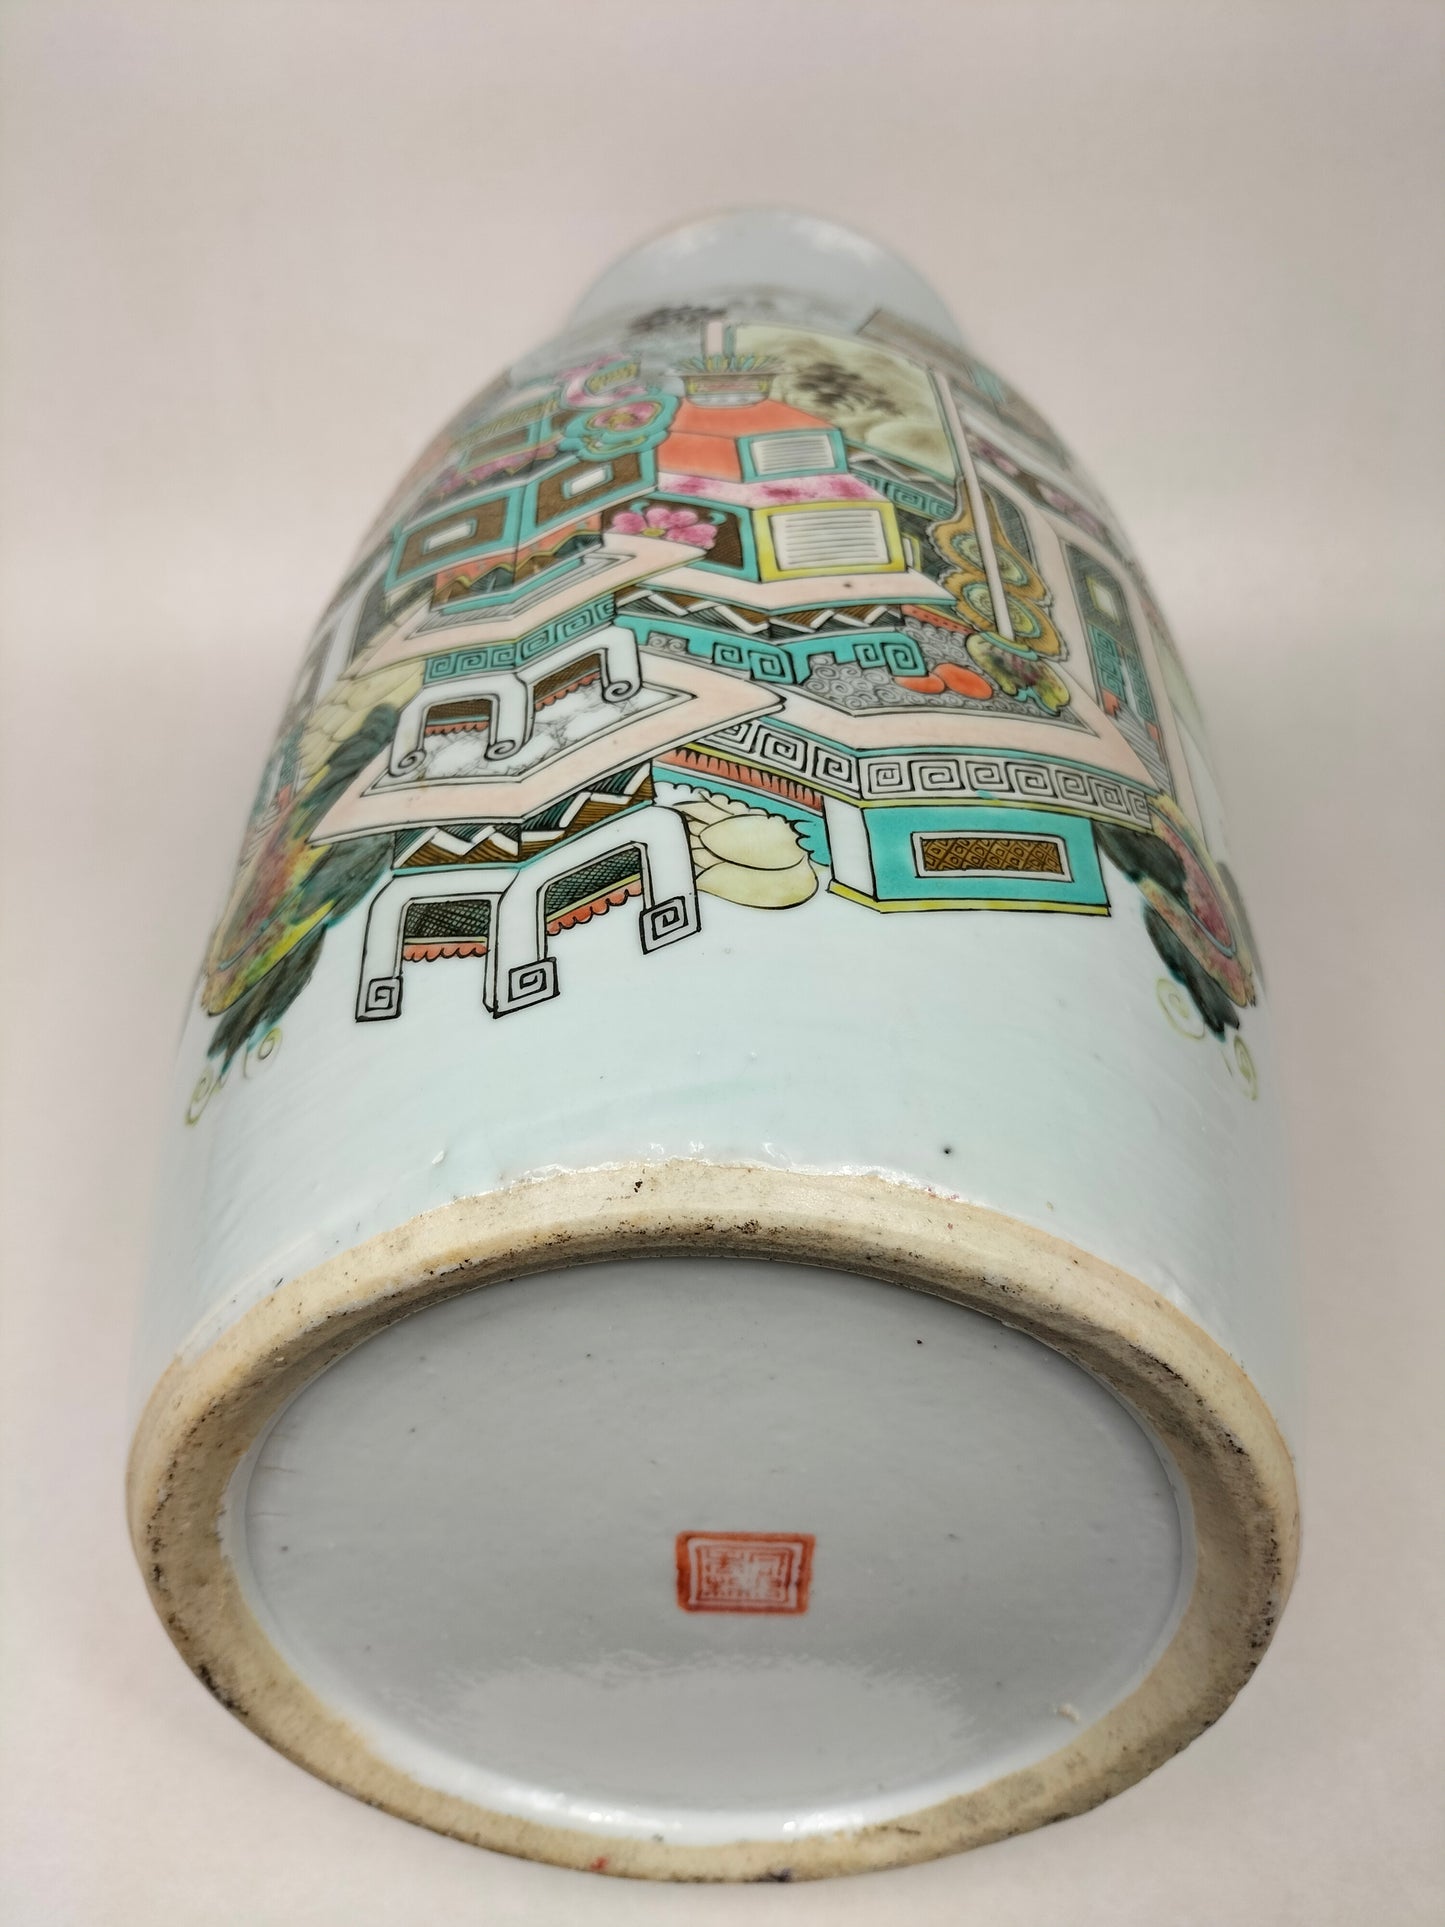 大型古董中国钱江彩花瓶，饰有古董 // 清朝 - 约 1900 年